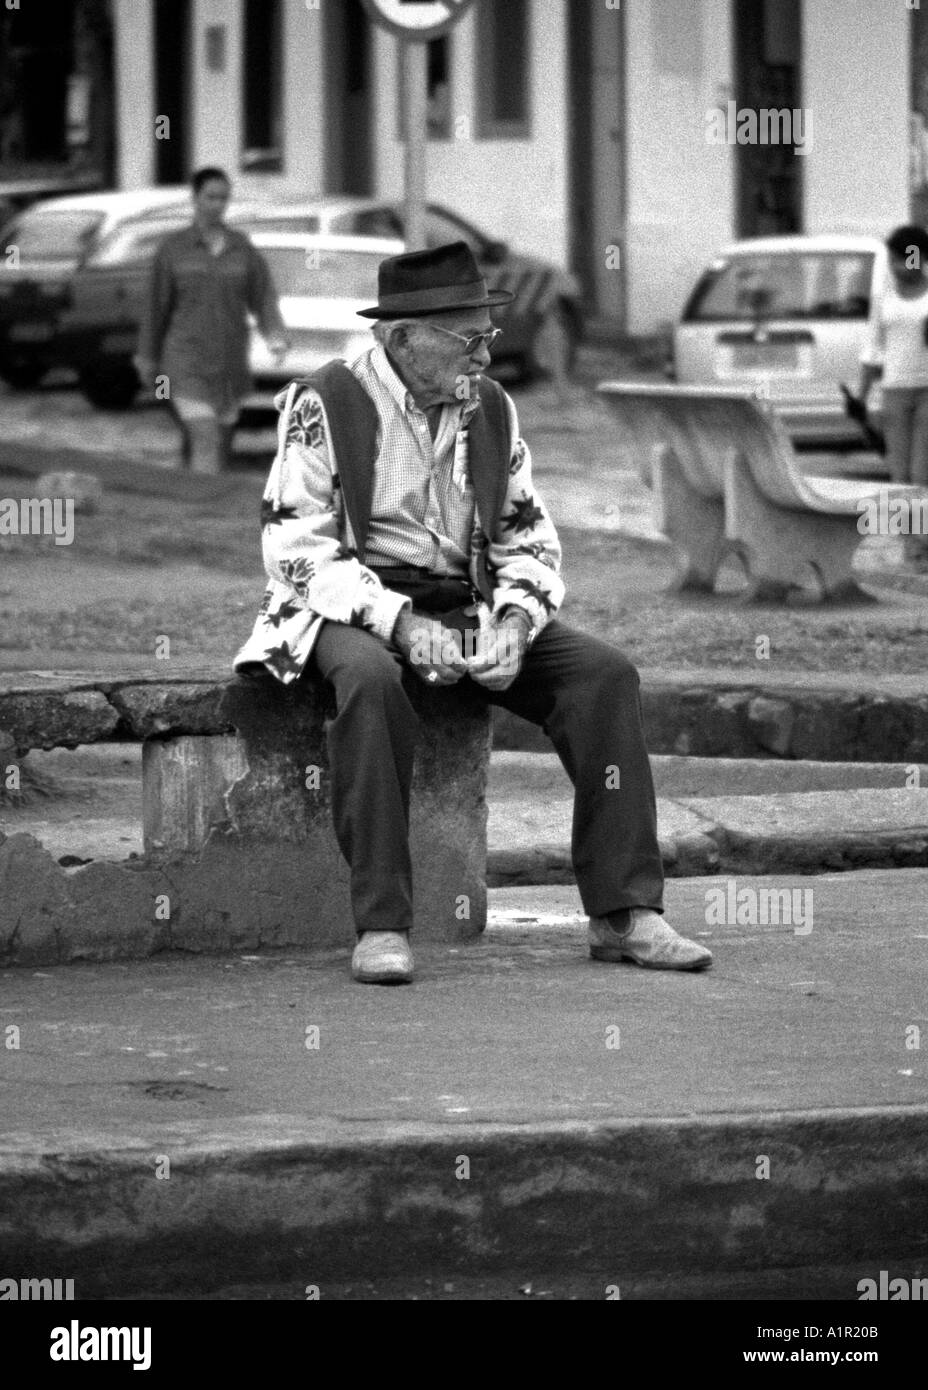 Homme assis sénile outdoor le banc public en attente de temps et les gens à aller en Ciudad del Este Paraguay Amérique Latine du Sud Banque D'Images